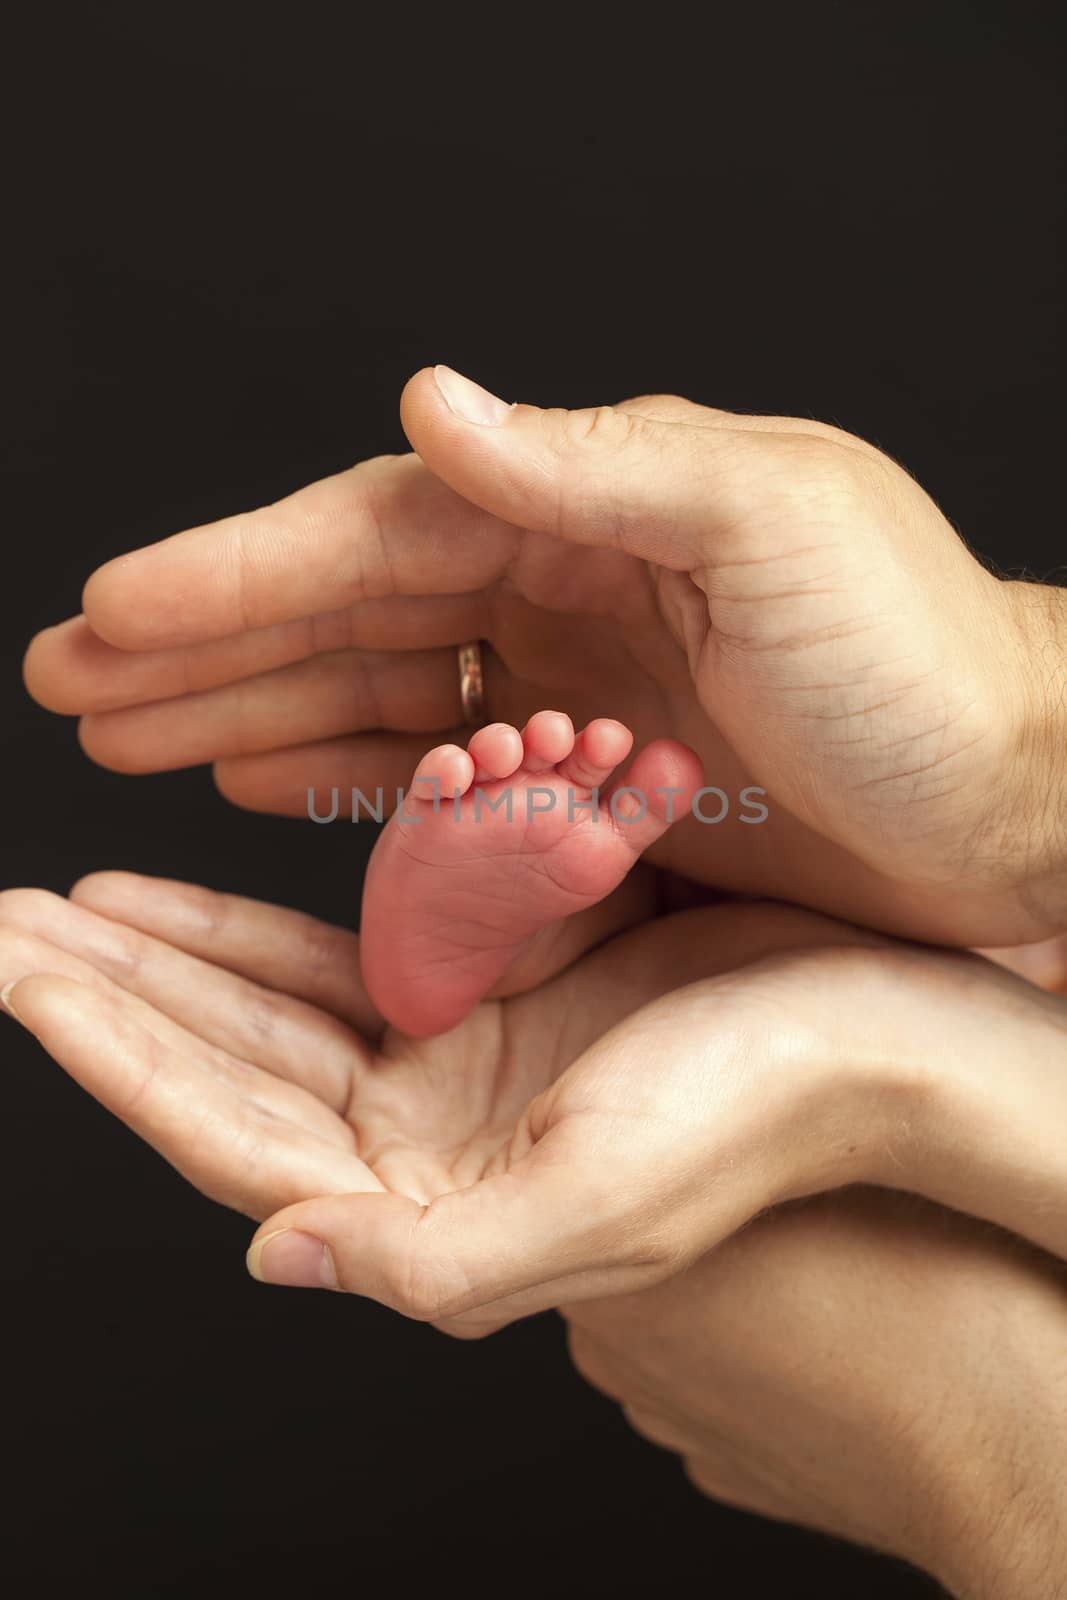 Newborn baby foot in parents hands over black background